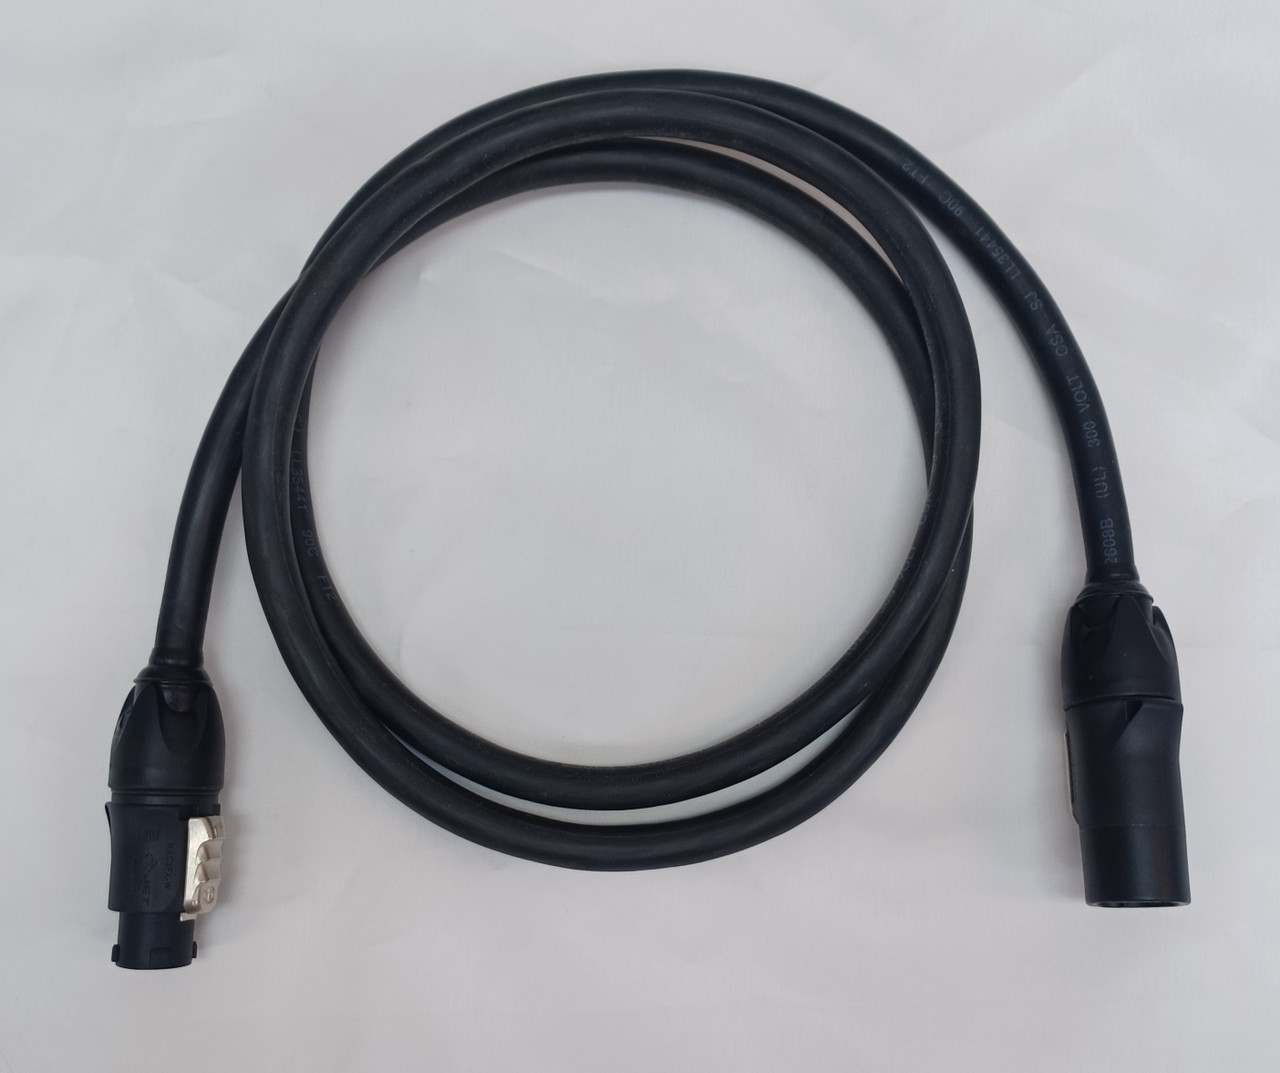 PlugsPlus 10 Foot True1 Extension Cable (X10TRUE1)